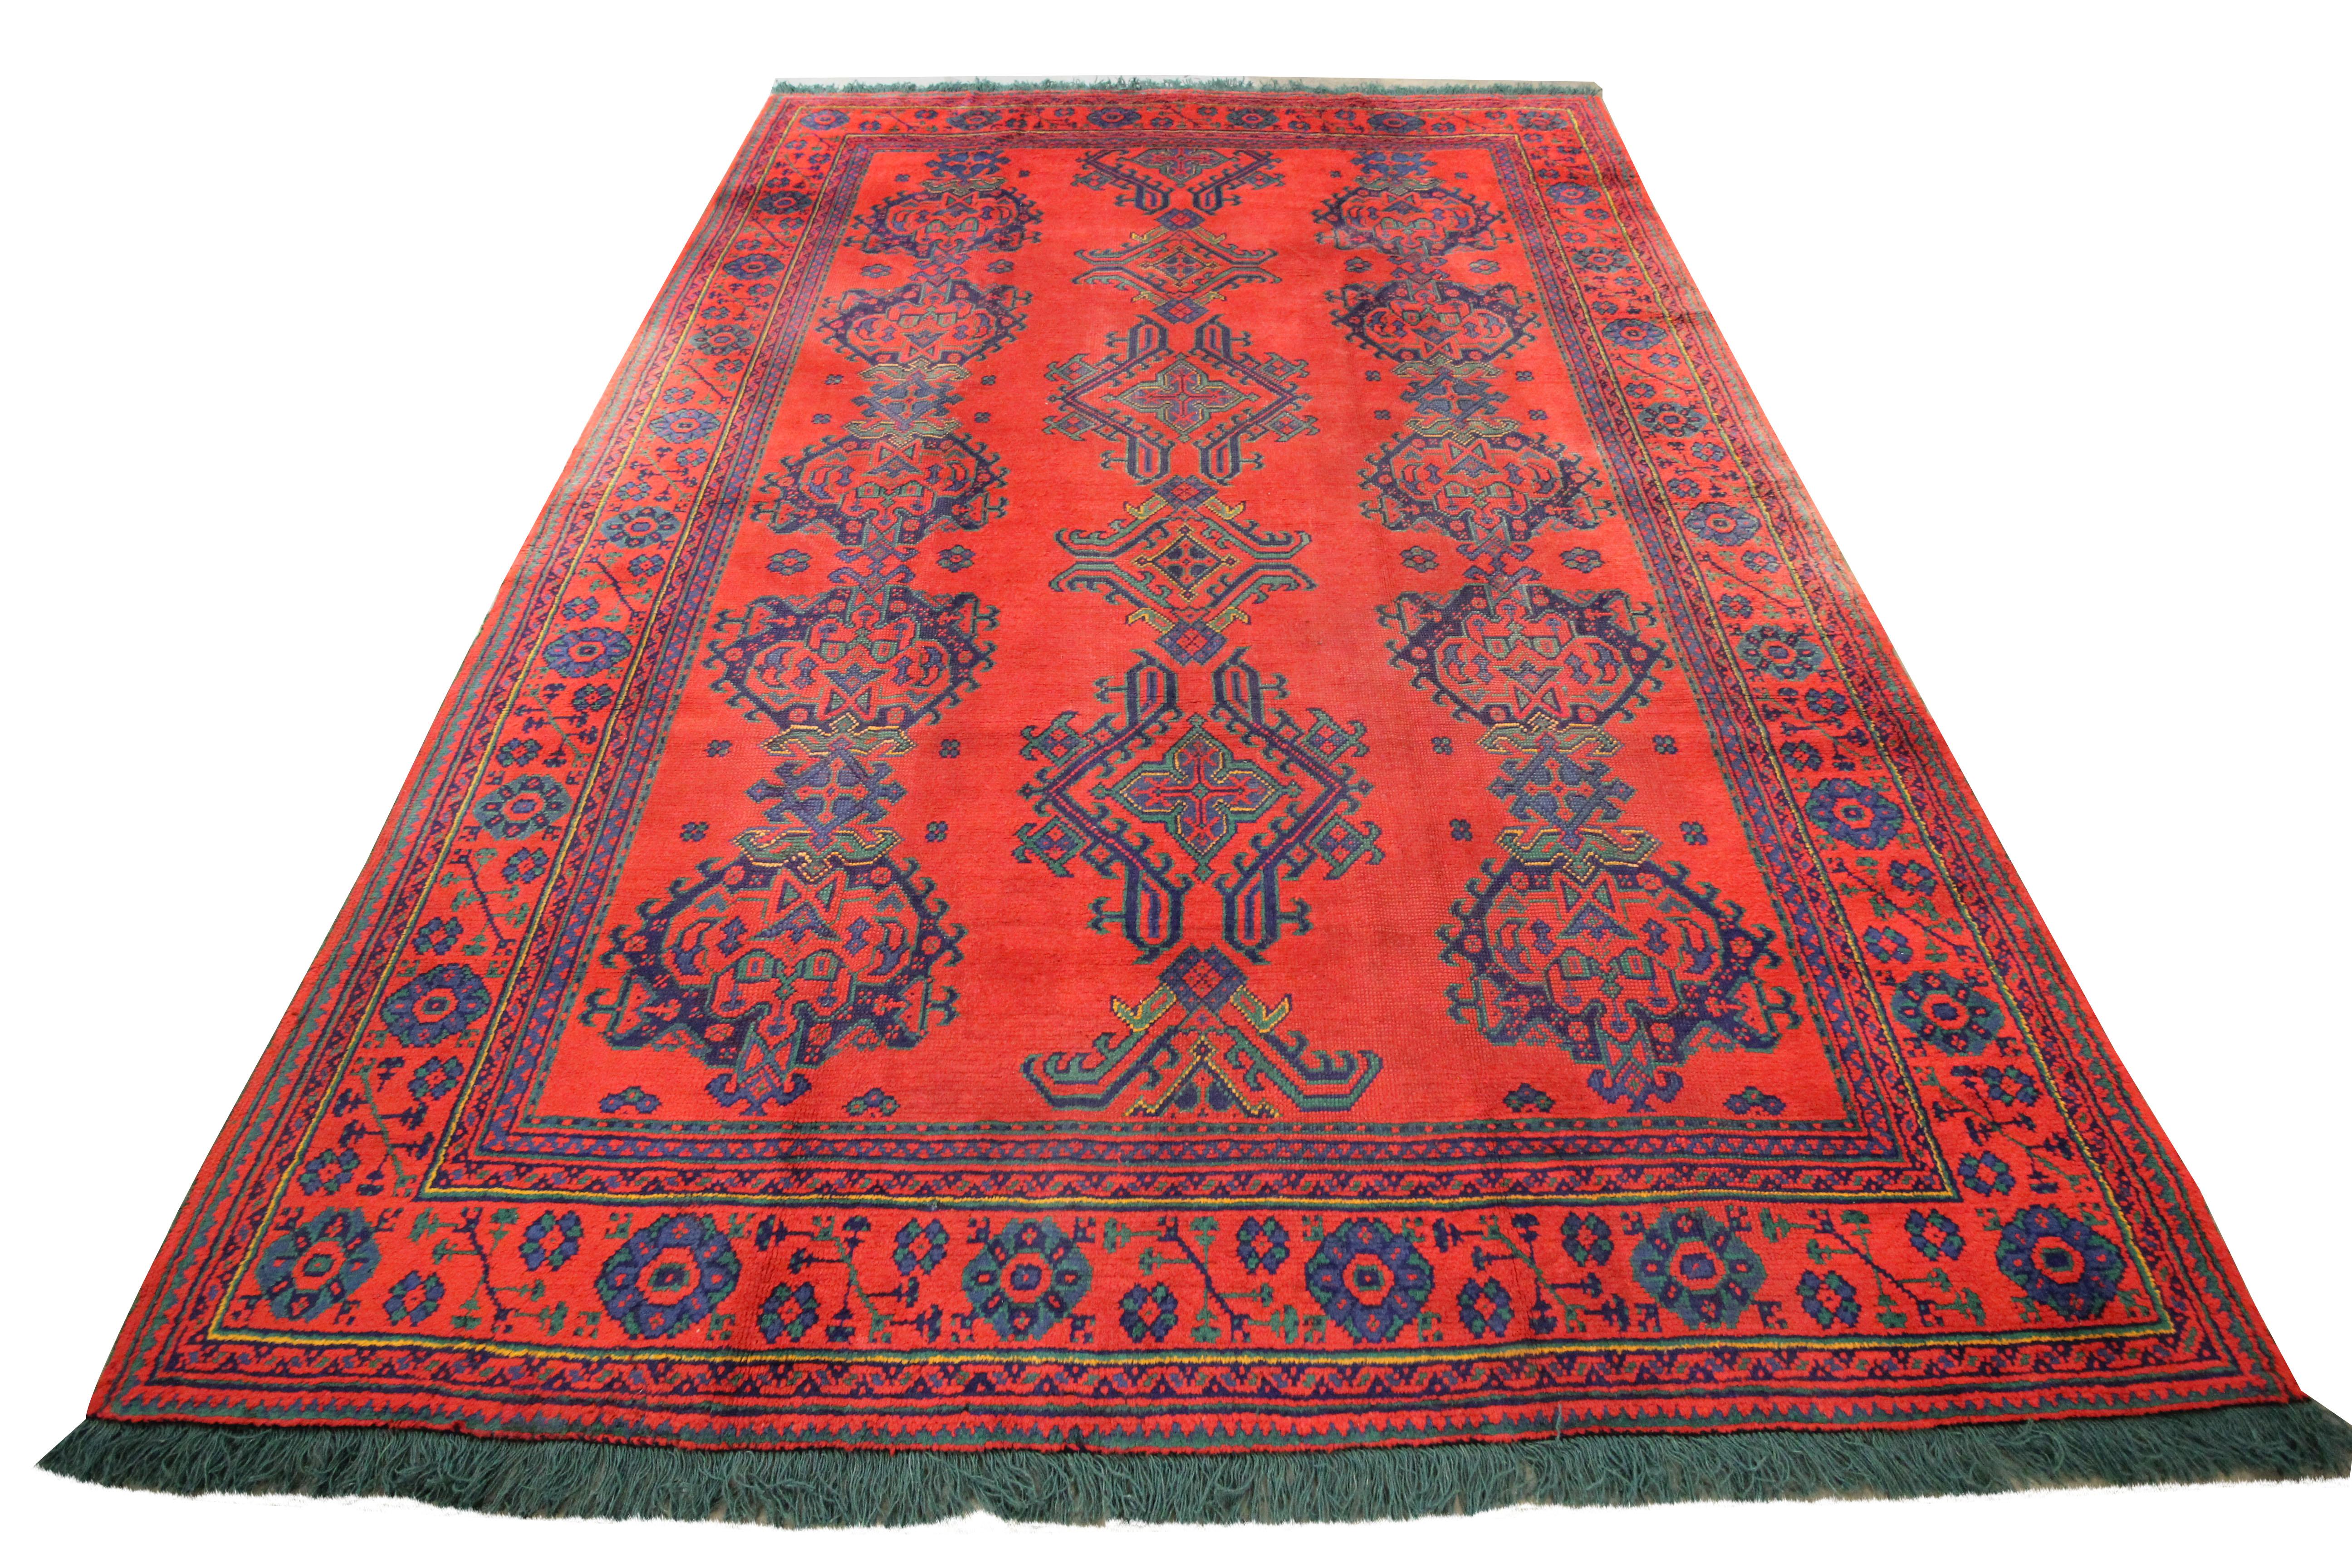 Dieser elegante Teppich wurde in den 1890er Jahren in der Türkei von Hand gewebt. Es handelt sich um einen Ushak-Teppich. Ushak- oder Oushak-Teppiche sind nach der Stadt Usak benannt, einer der größeren Städte Anatoliens, einem wichtigen Zentrum der